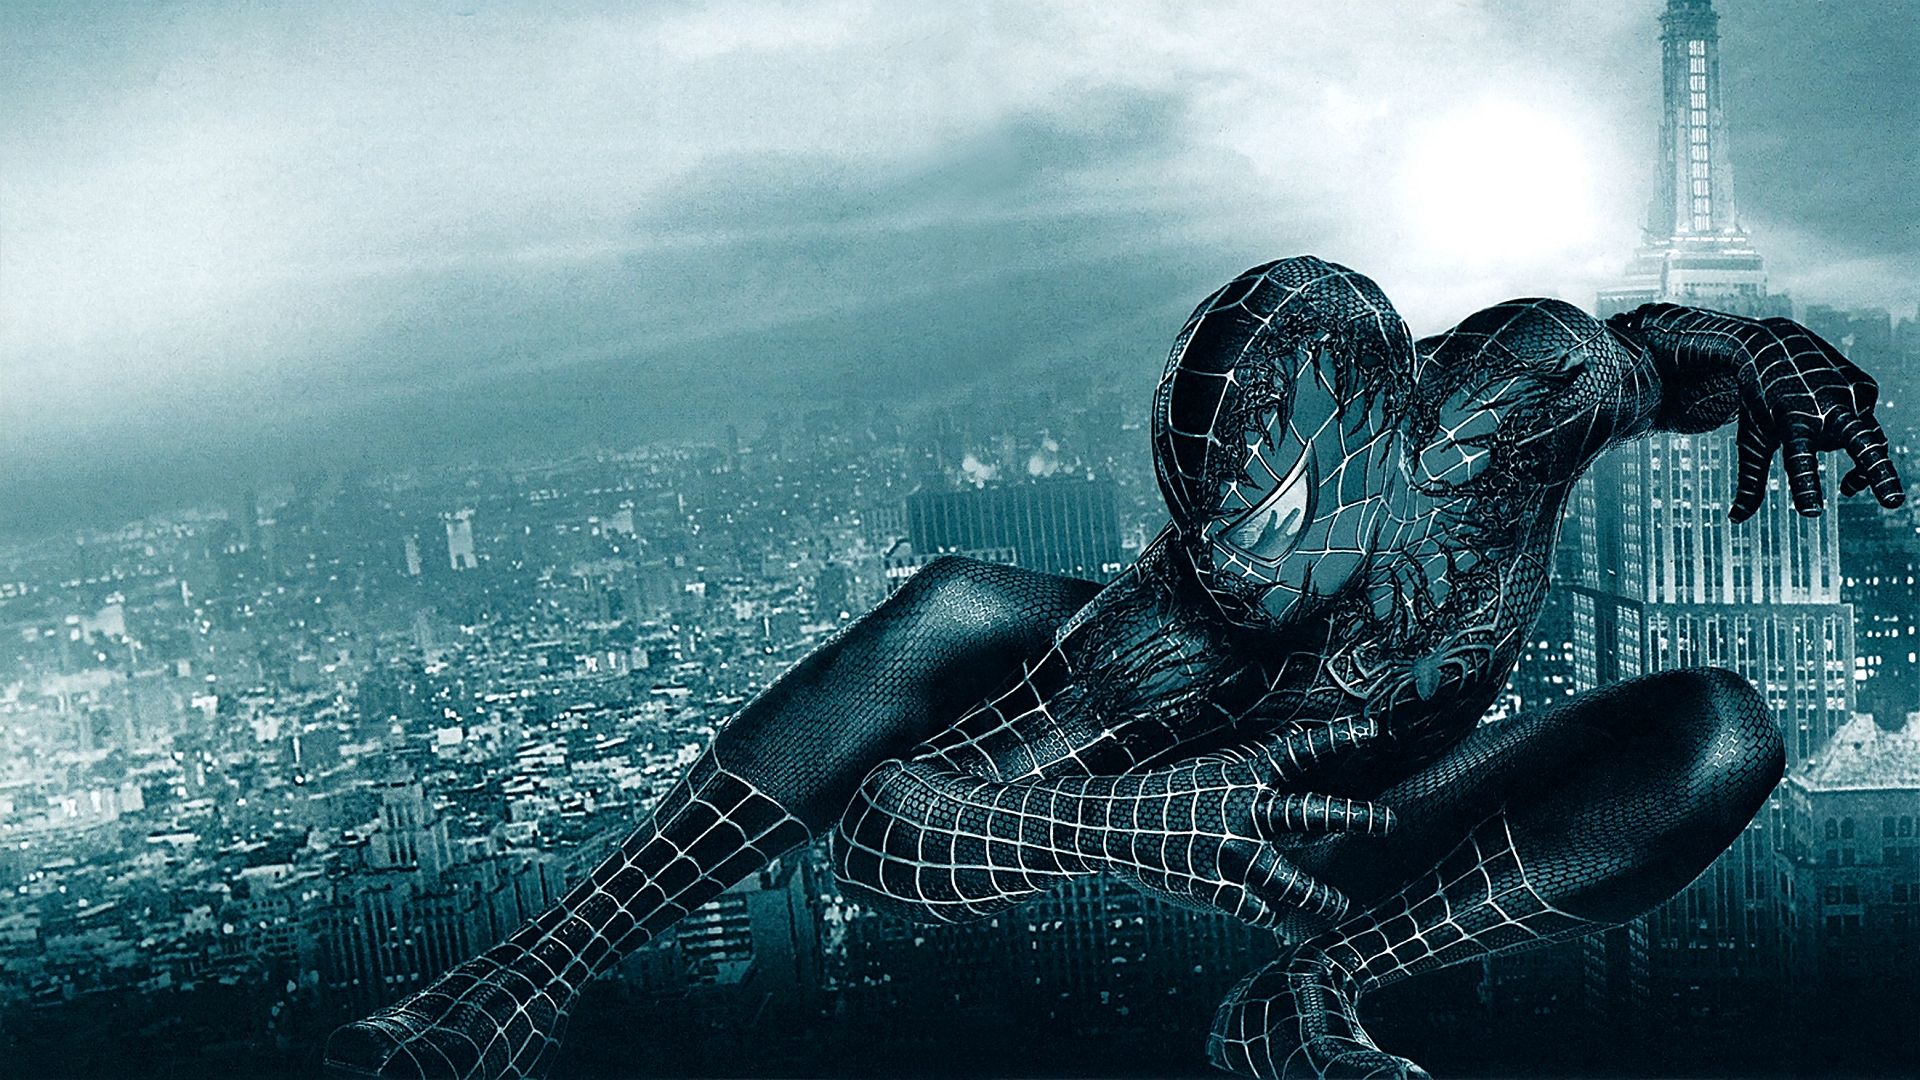 Free download wallpaper Spider Man, Movie, Superhero, Spider Man 3 on your PC desktop